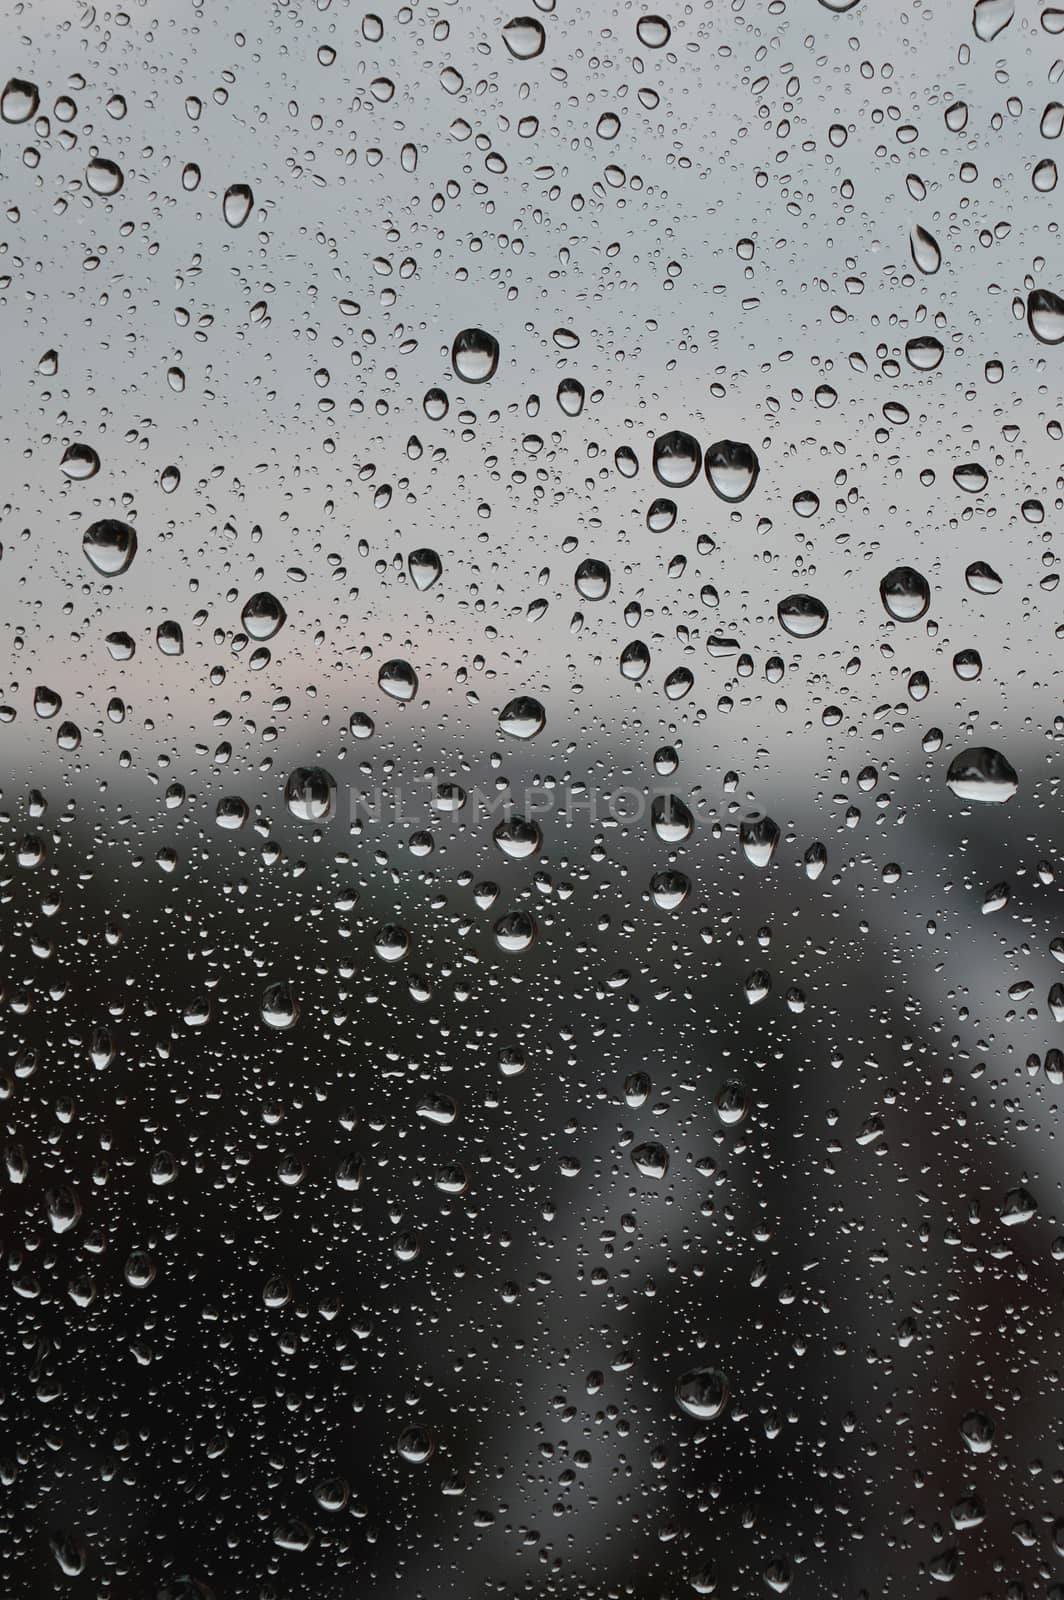 Drops of rain on the window, rainy day, dark tone. Shallow DOF